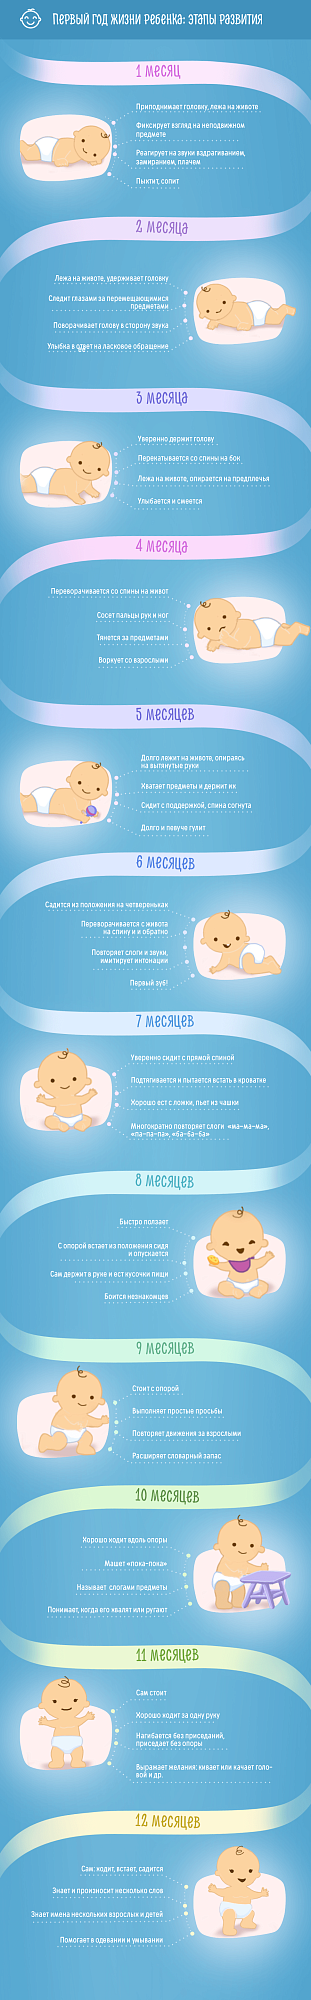 Первый год жизни ребенка: развитие по месяцам